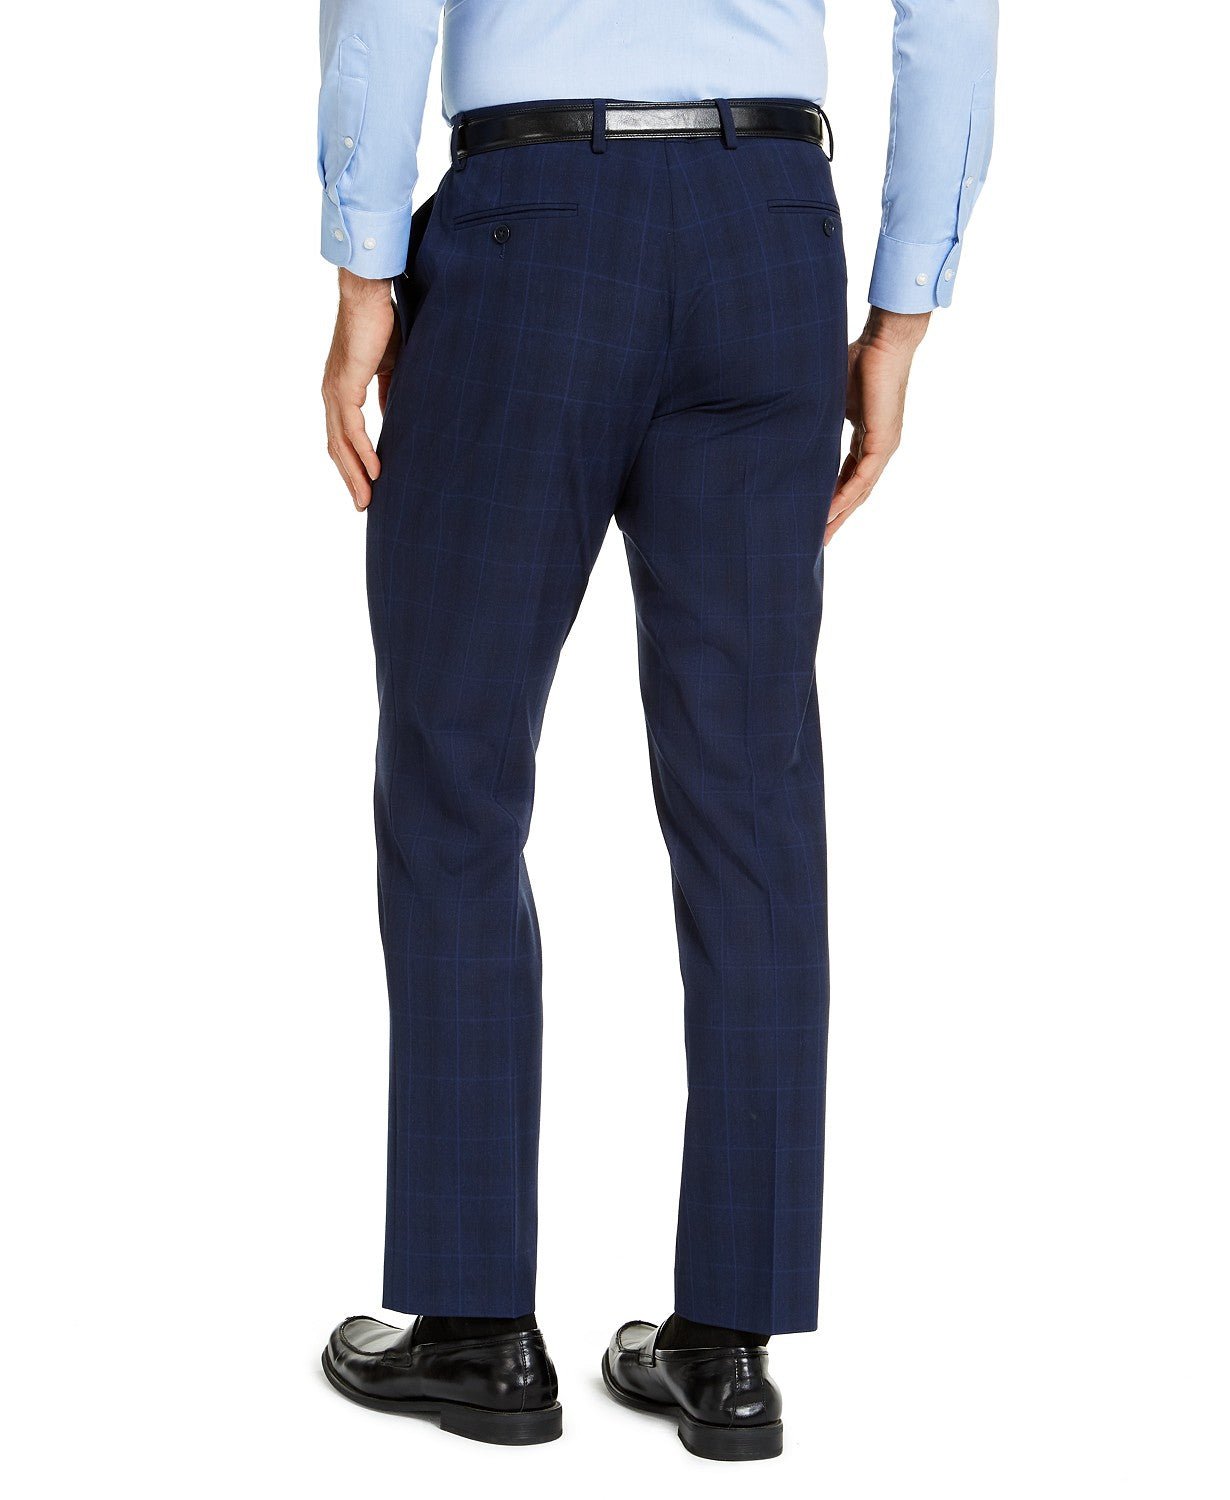 IZOD Men's Classic-Fit Suit Pants Only Navy Blue Windowpane 38 x 32